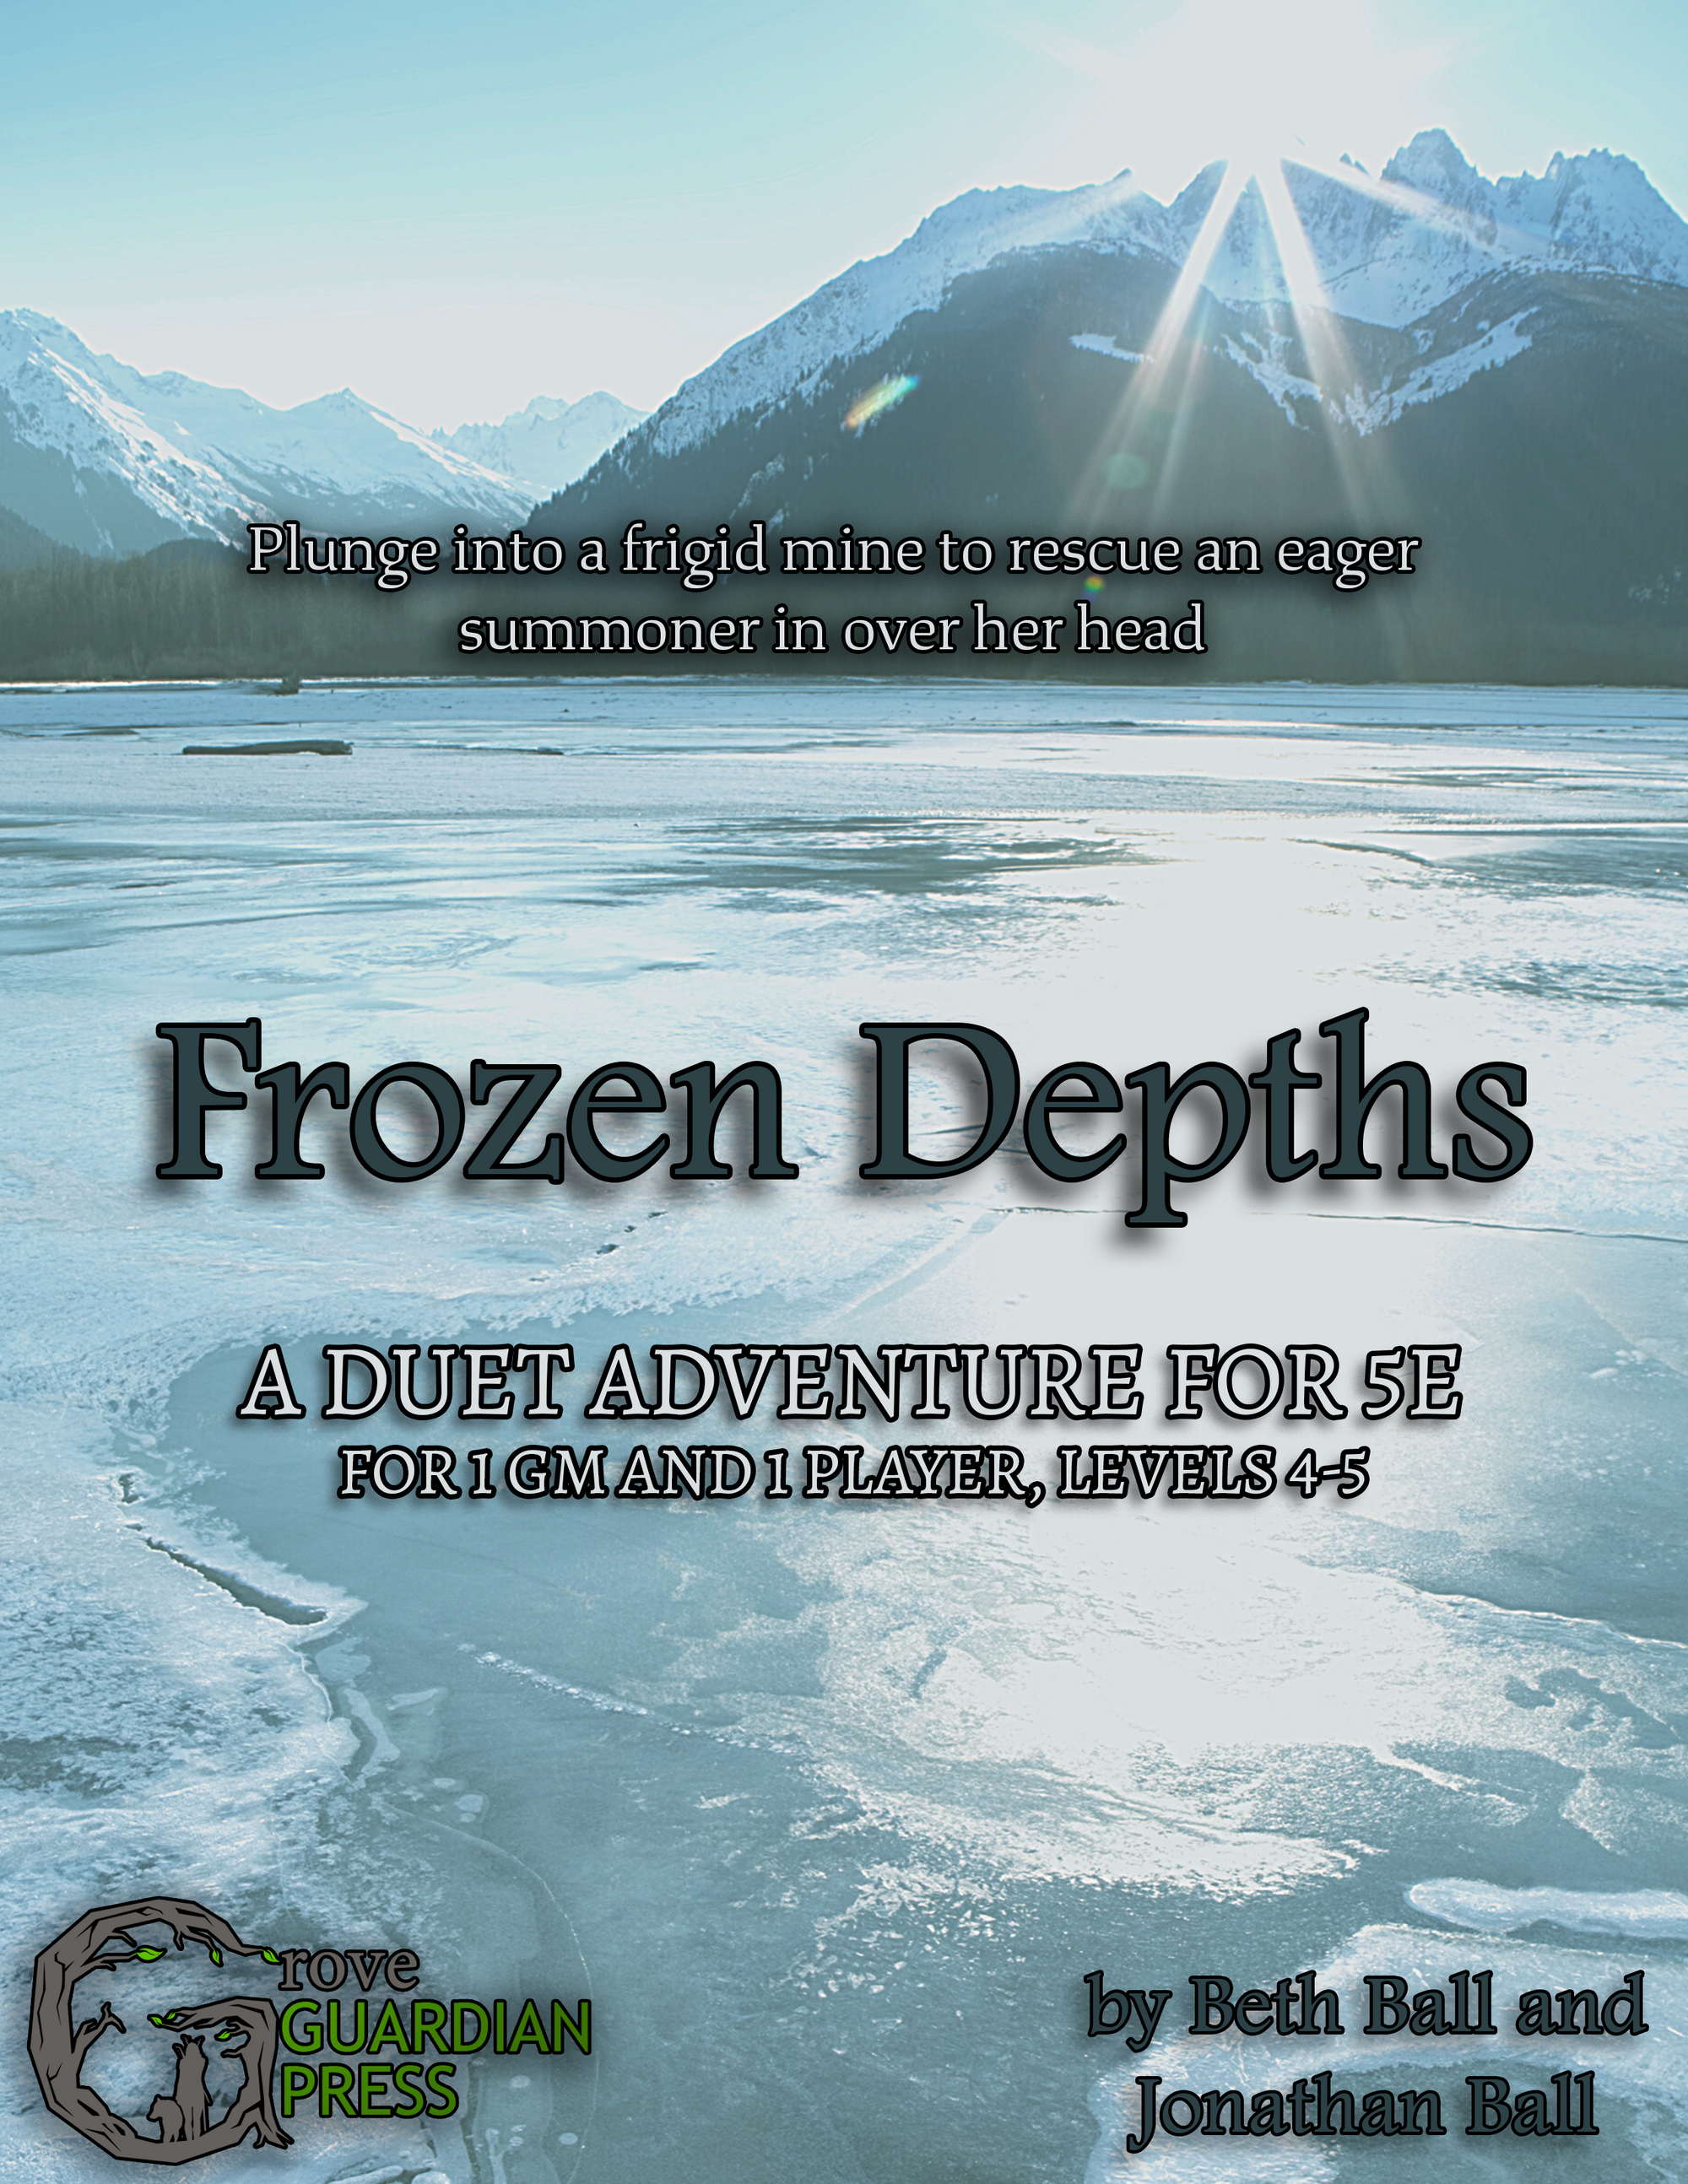 Frozen Depths—a duet 5e adventure